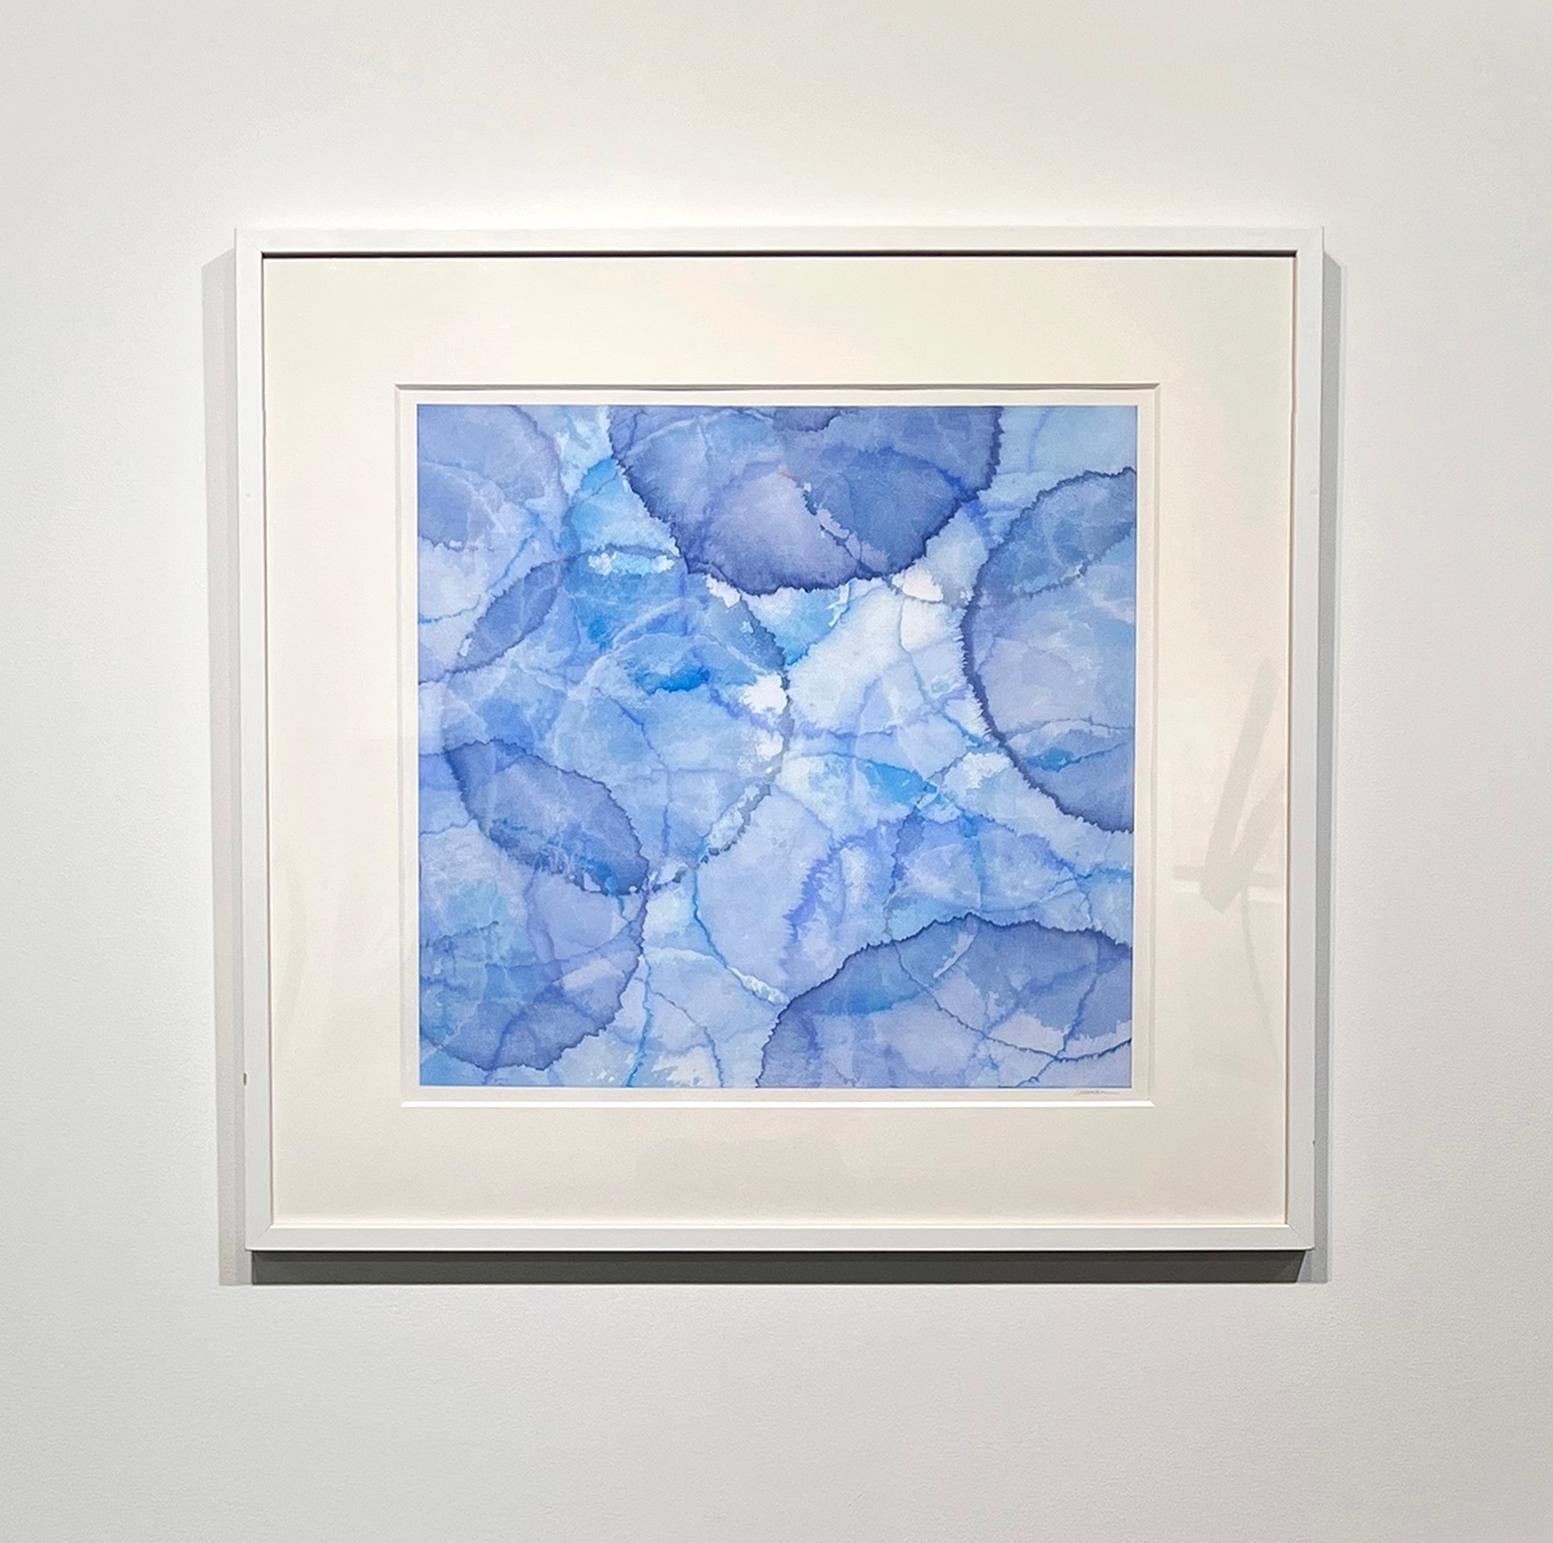 Abstract Painting Roger Mudre - "Araroba" - Peinture abstraite à la couleur changeante